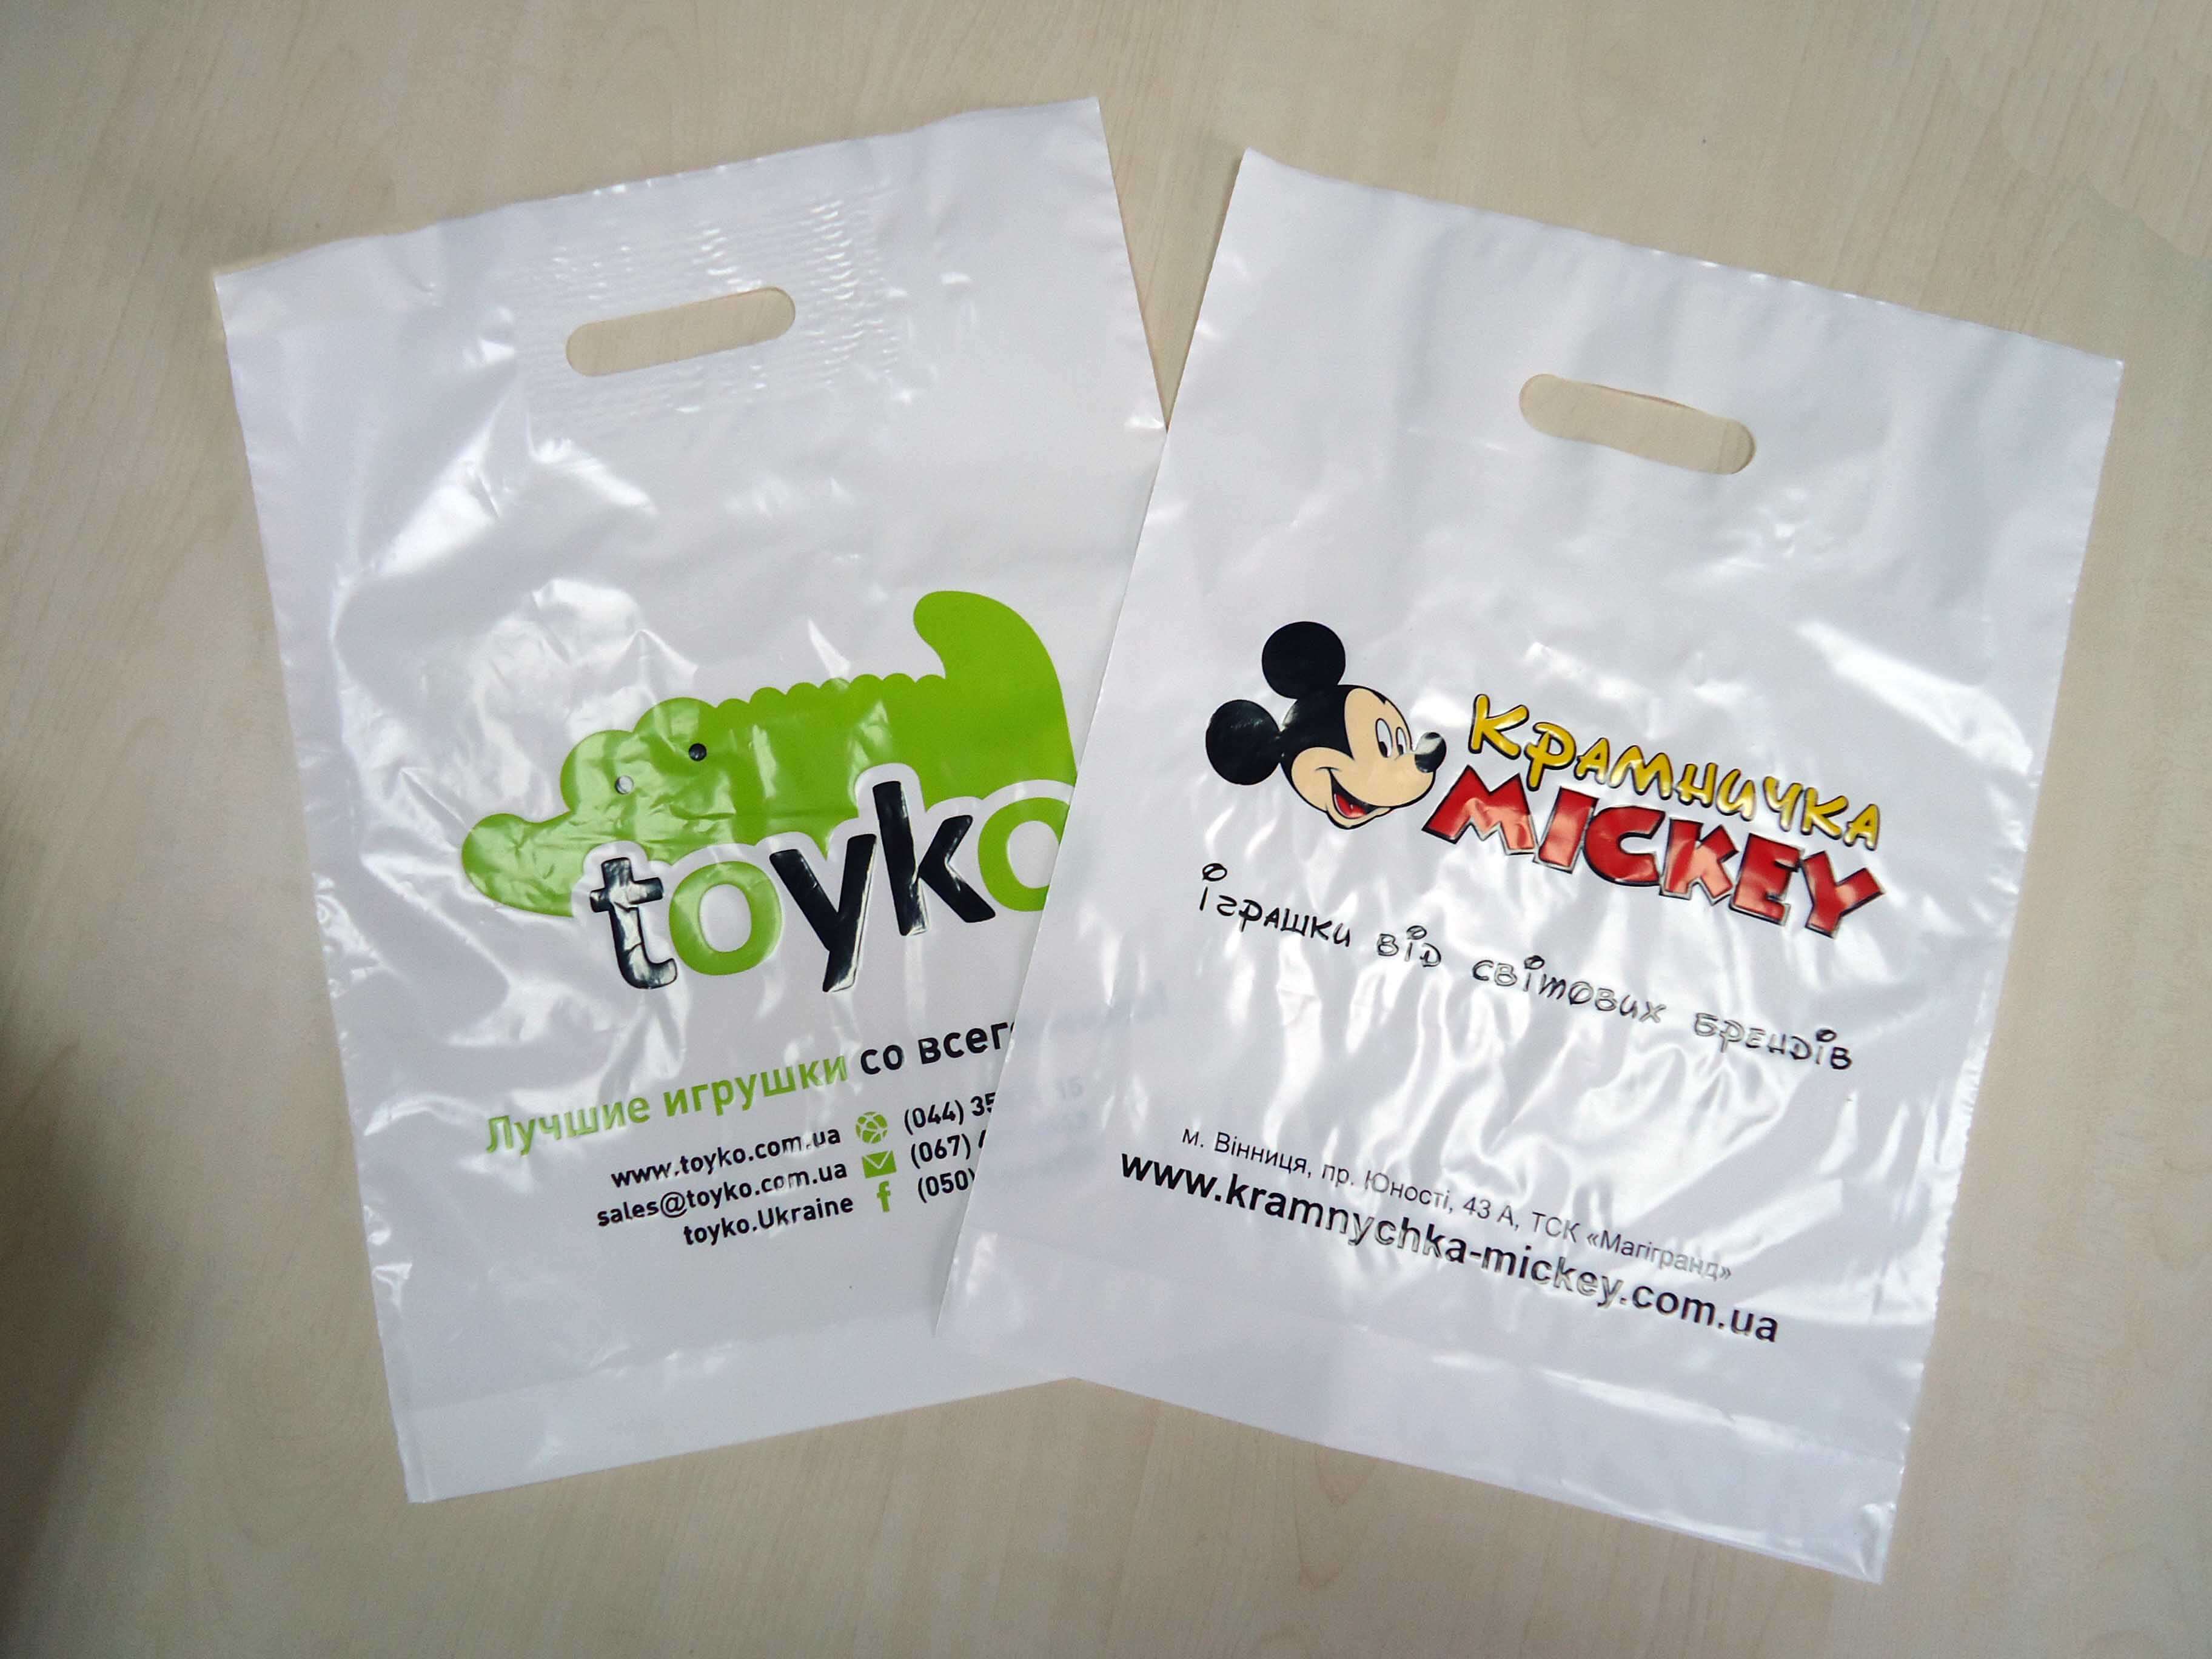 Реклама бренда на пакете с логотипом Chernigov Package - Photo DSC03558